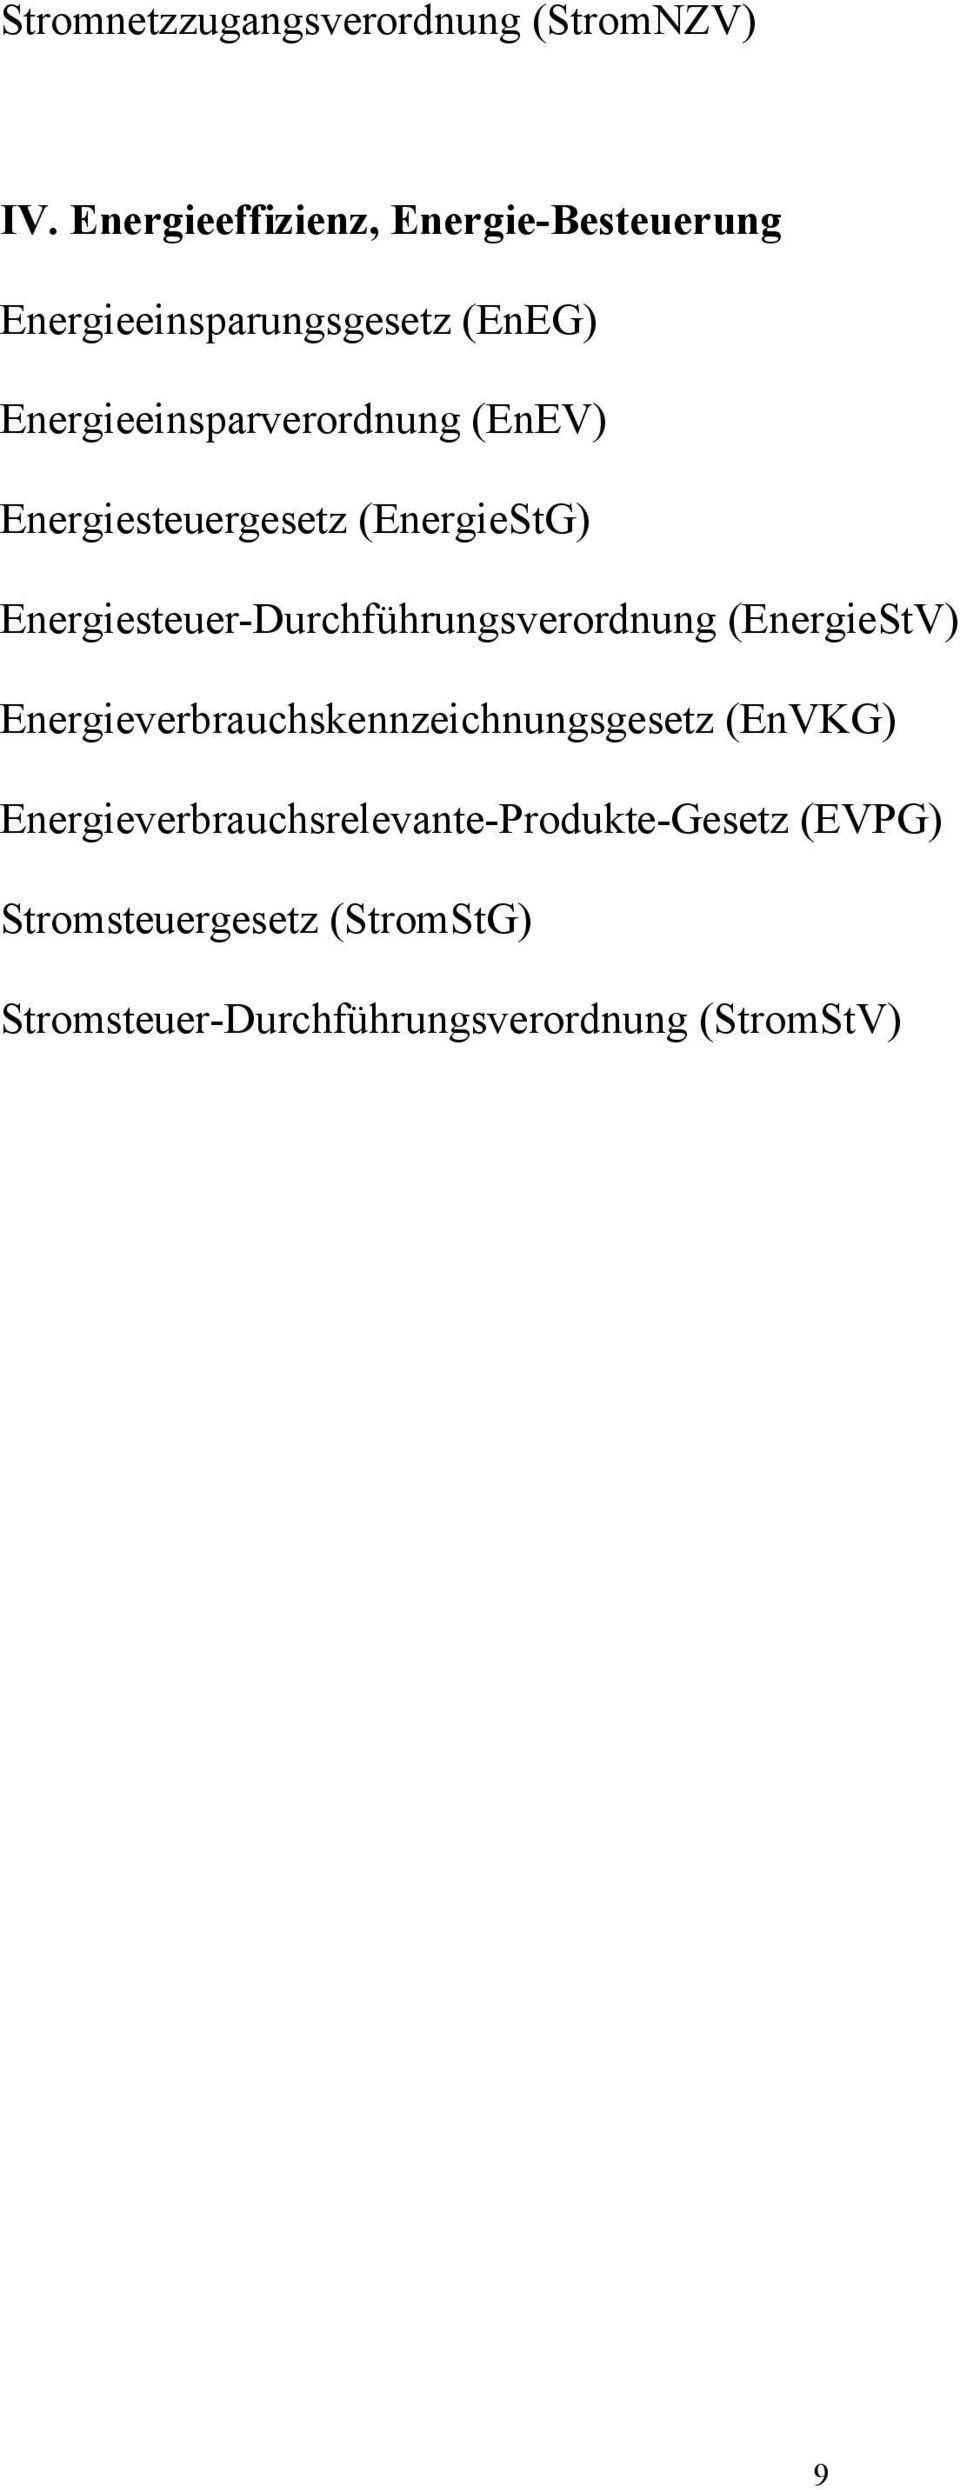 (EnEV) Energiesteuergesetz (EnergieStG) Energiesteuer-Durchführungsverordnung (EnergieStV)